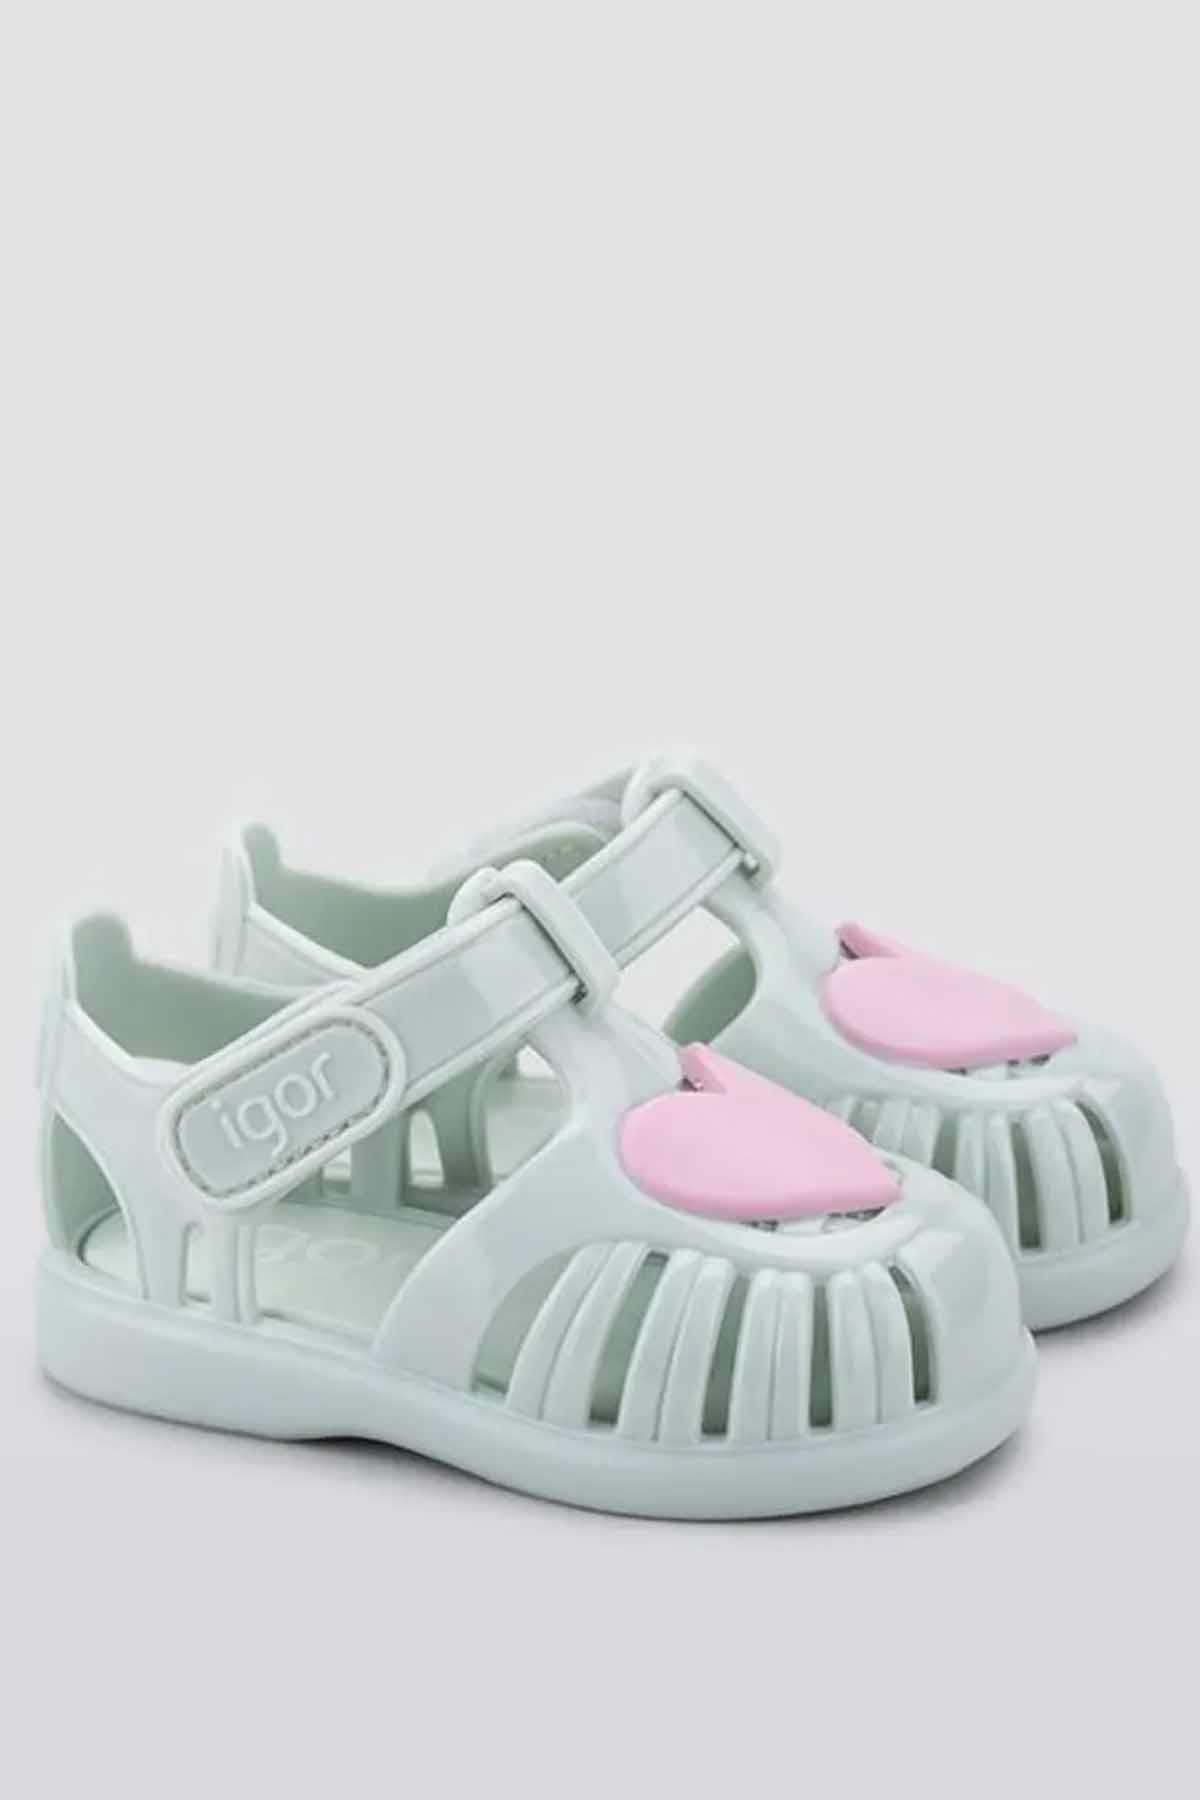 IGOR Tobby Gloss Love Çocuk Sandalet Ayakkabı S10310-026menta